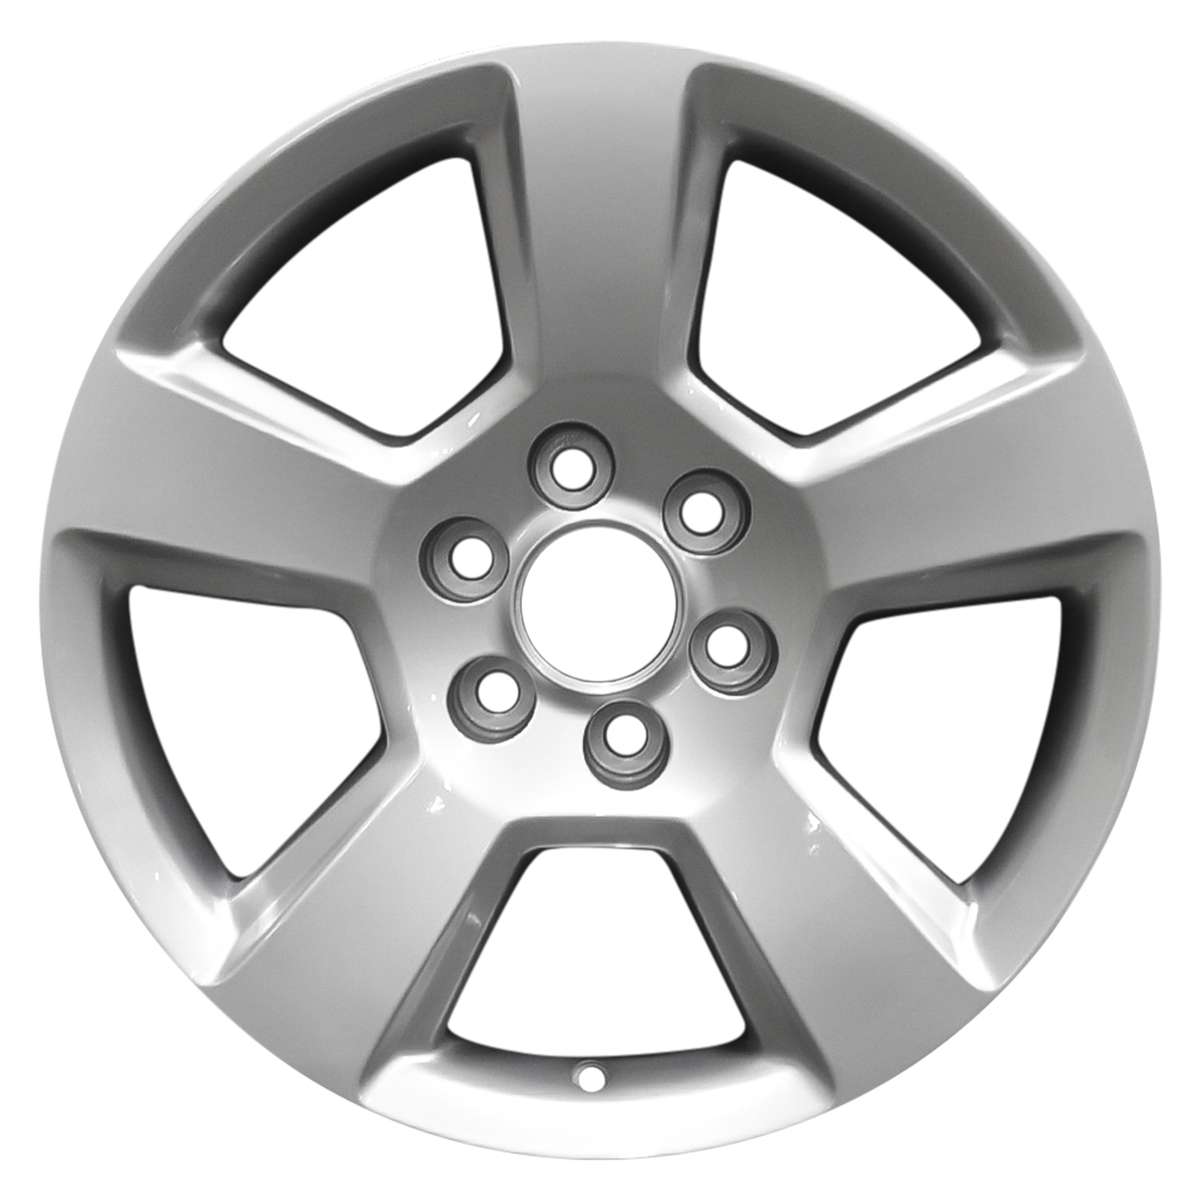 2021 GMC Yukon XL 20" OEM Wheel Rim W5754S